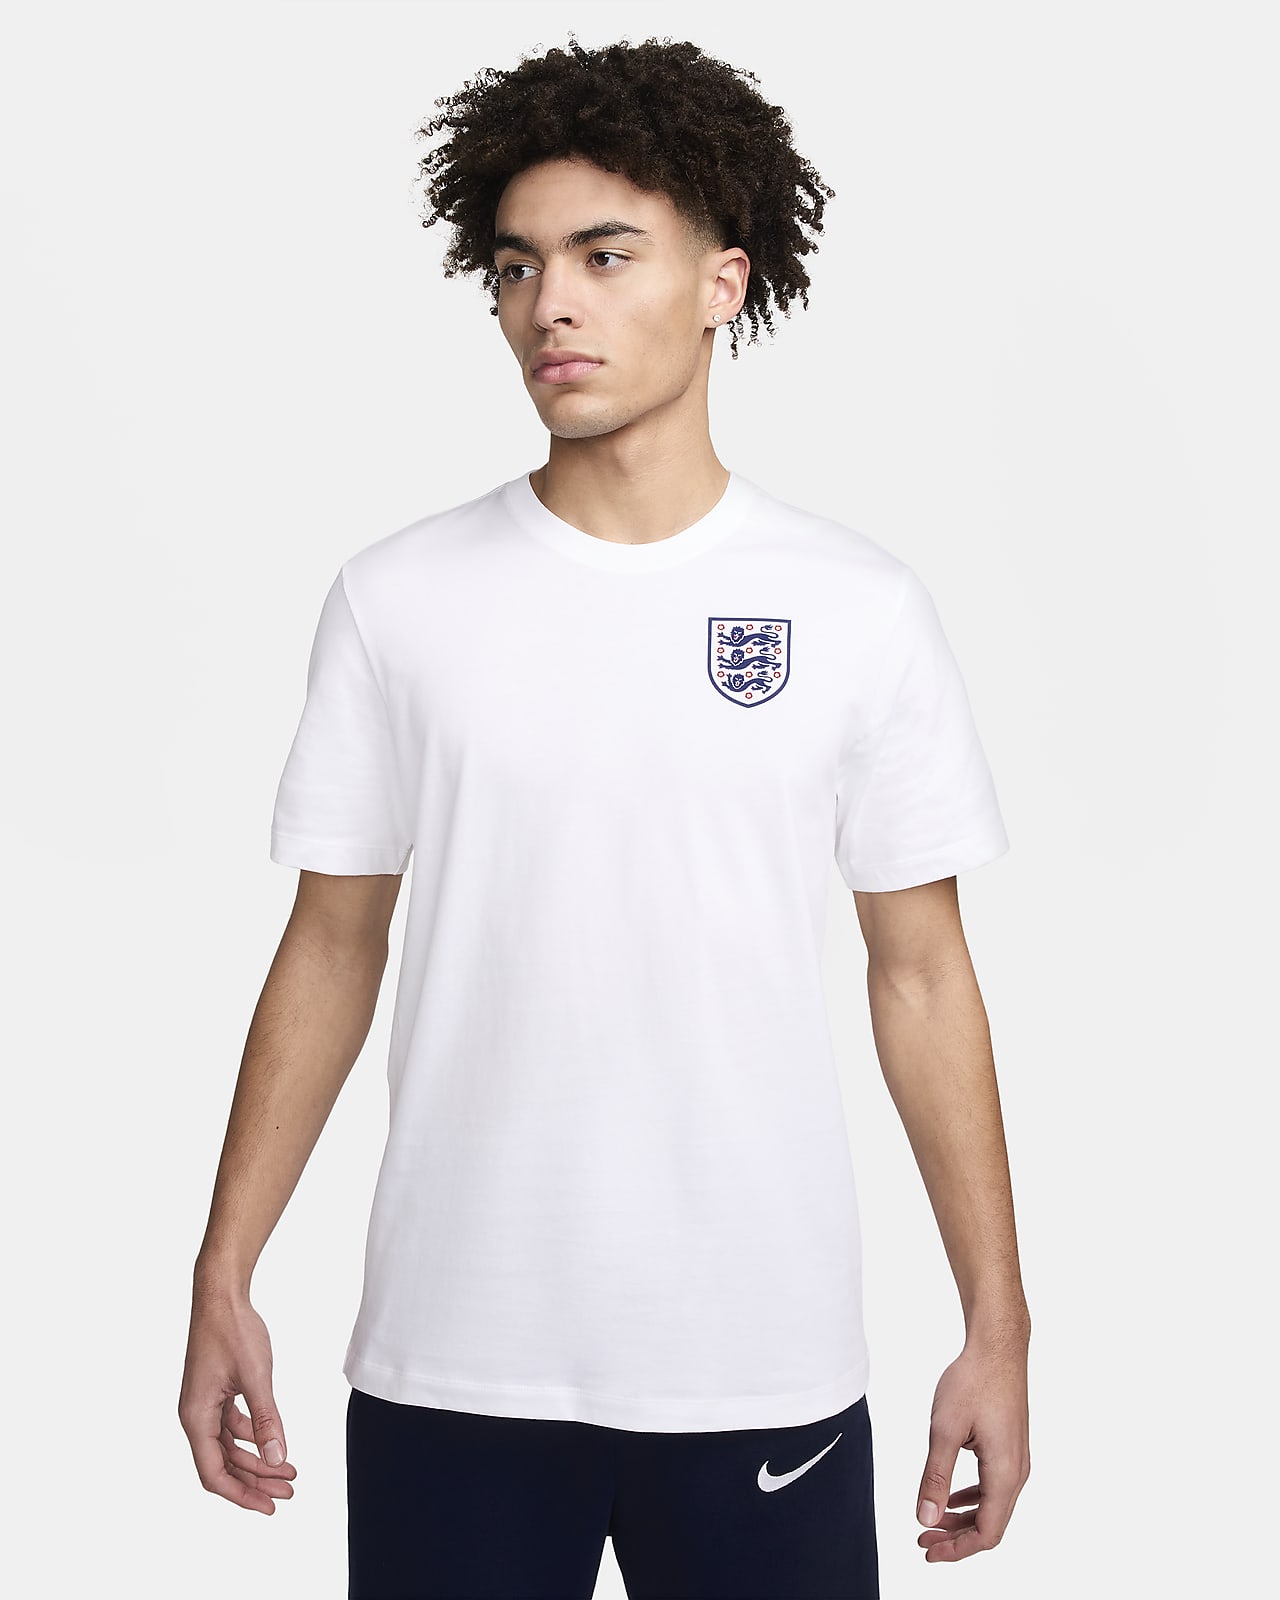 잉글랜드 남성 나이키 축구 티셔츠